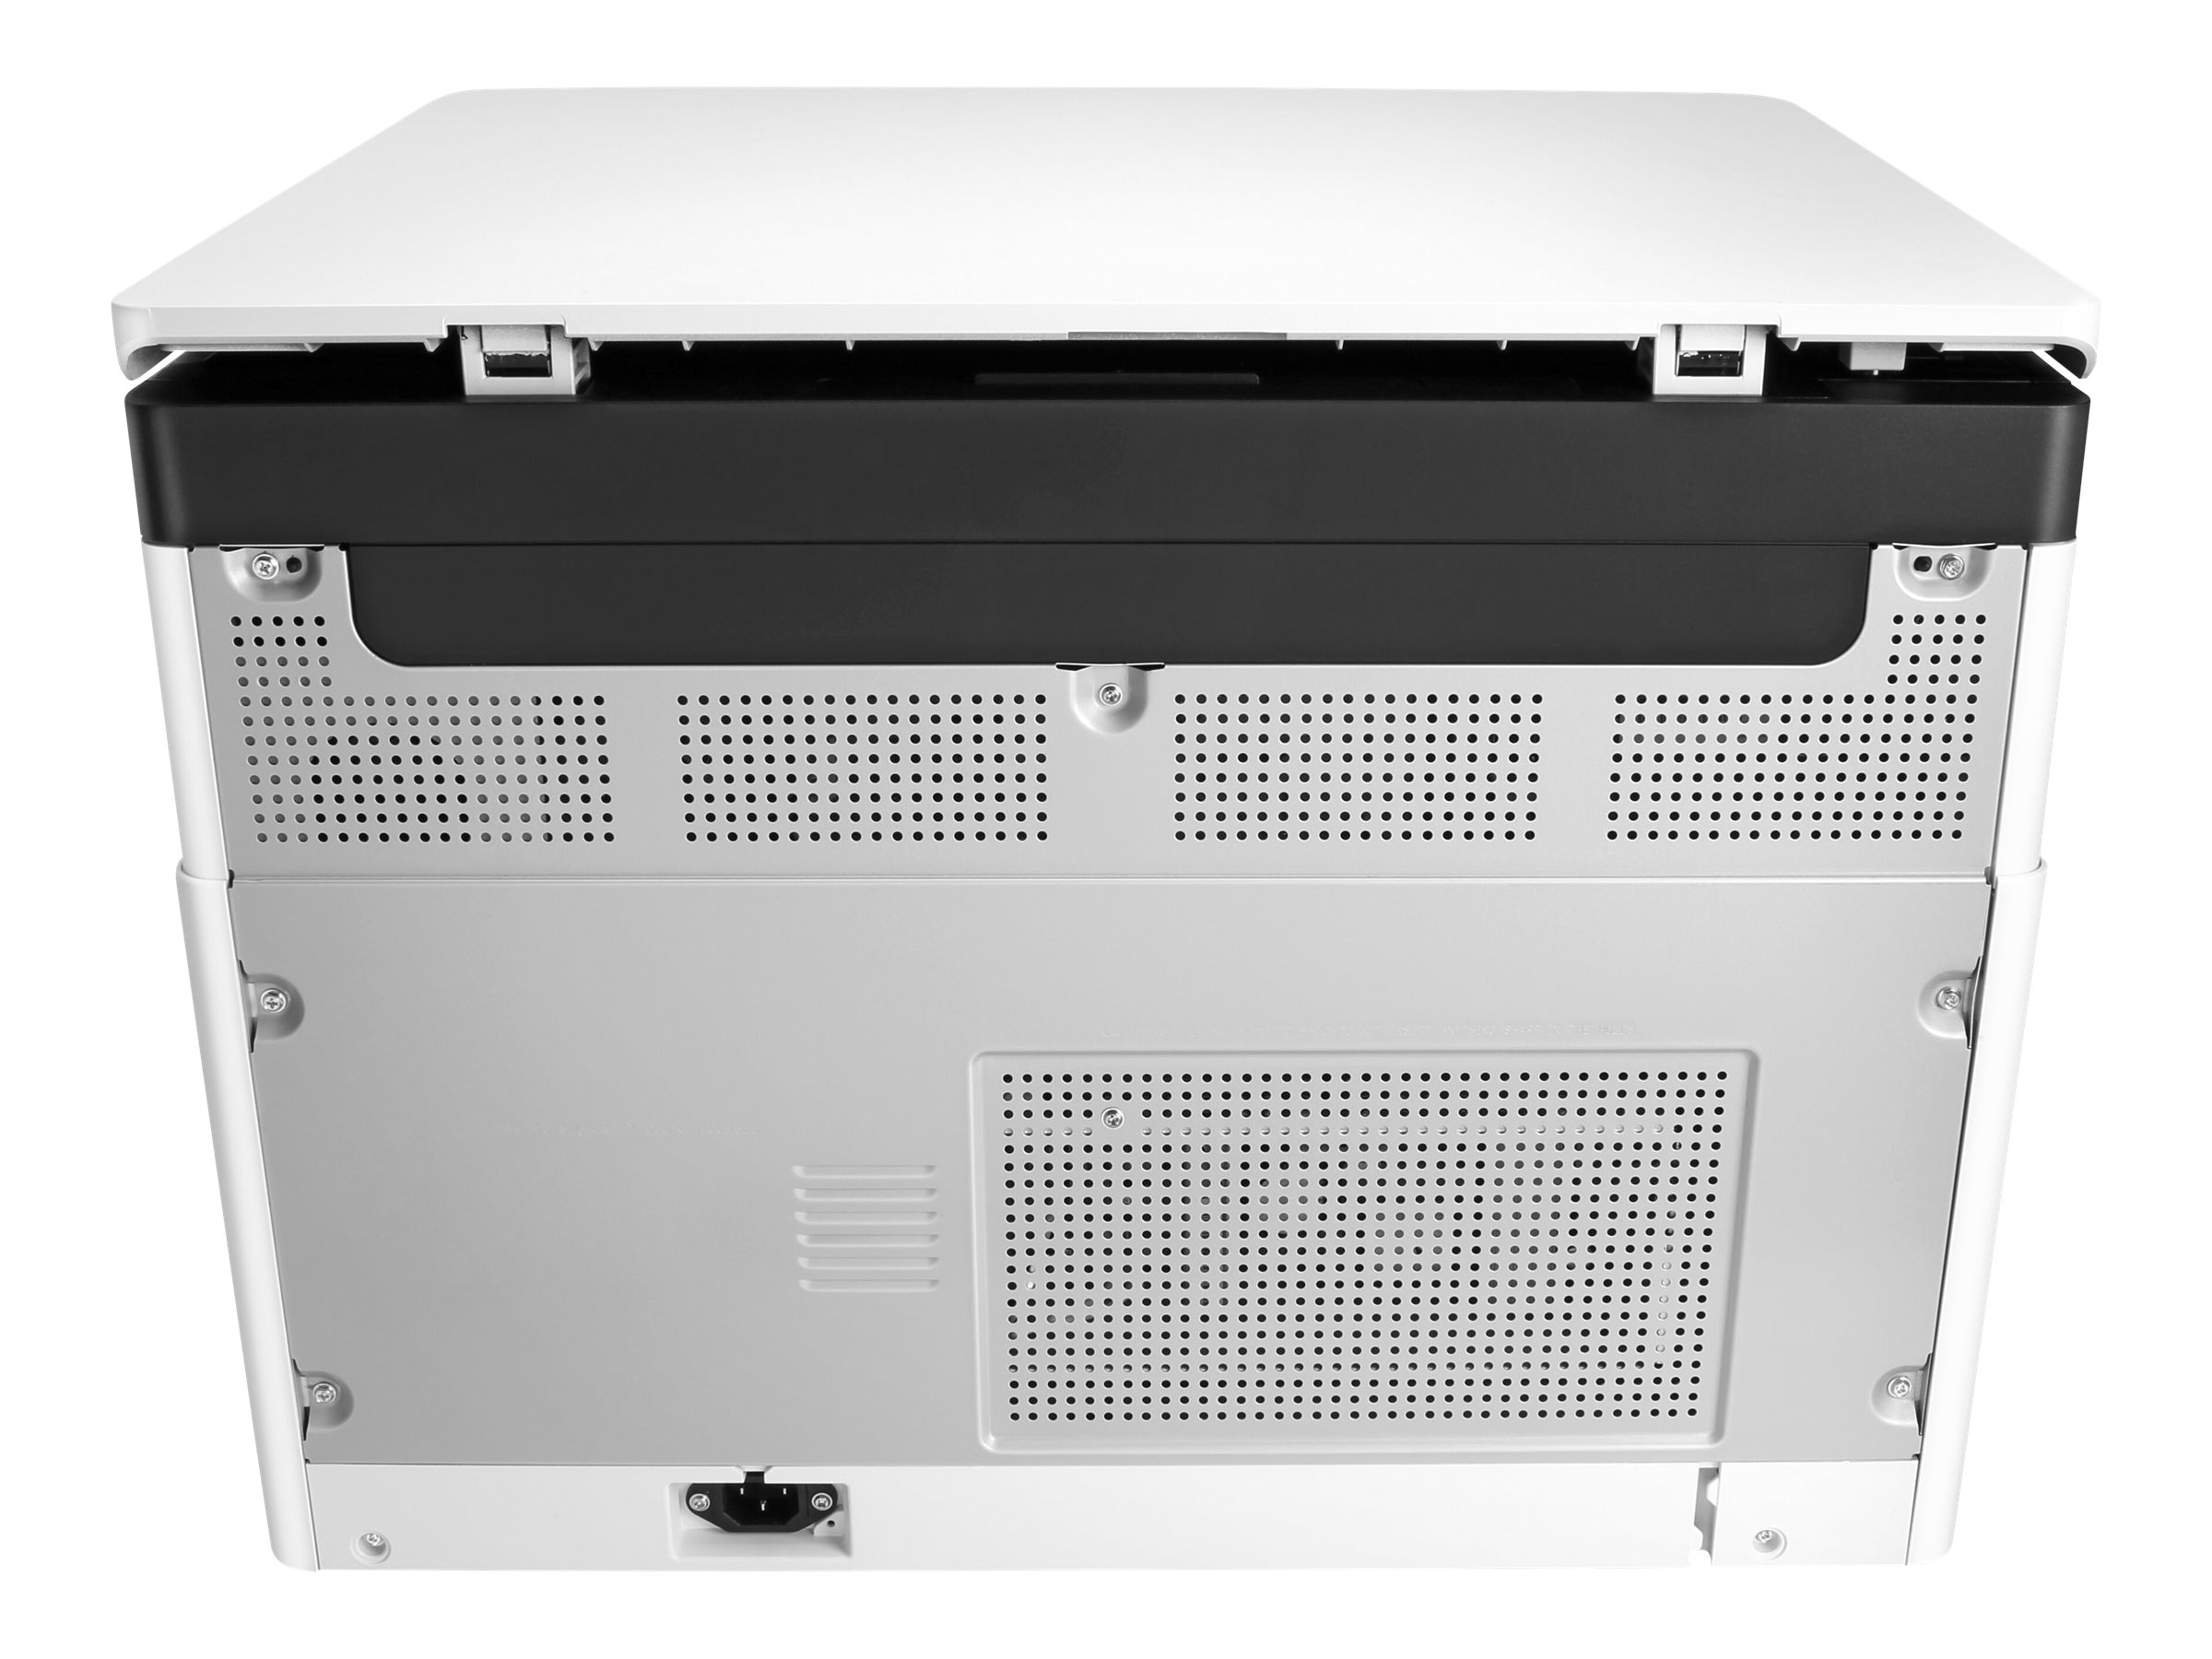 HP LaserJet MFP M442dn - Imprimante multifonctions - Noir et blanc - laser - A3/Ledger (297 x 432 mm) (original) - A3/Ledger (support) - jusqu'à 24 ppm (copie) - jusqu'à 24 ppm (impression) - 350 feuilles - USB 2.0, LAN - 8AF71A#B19 - Imprimantes multifonctions